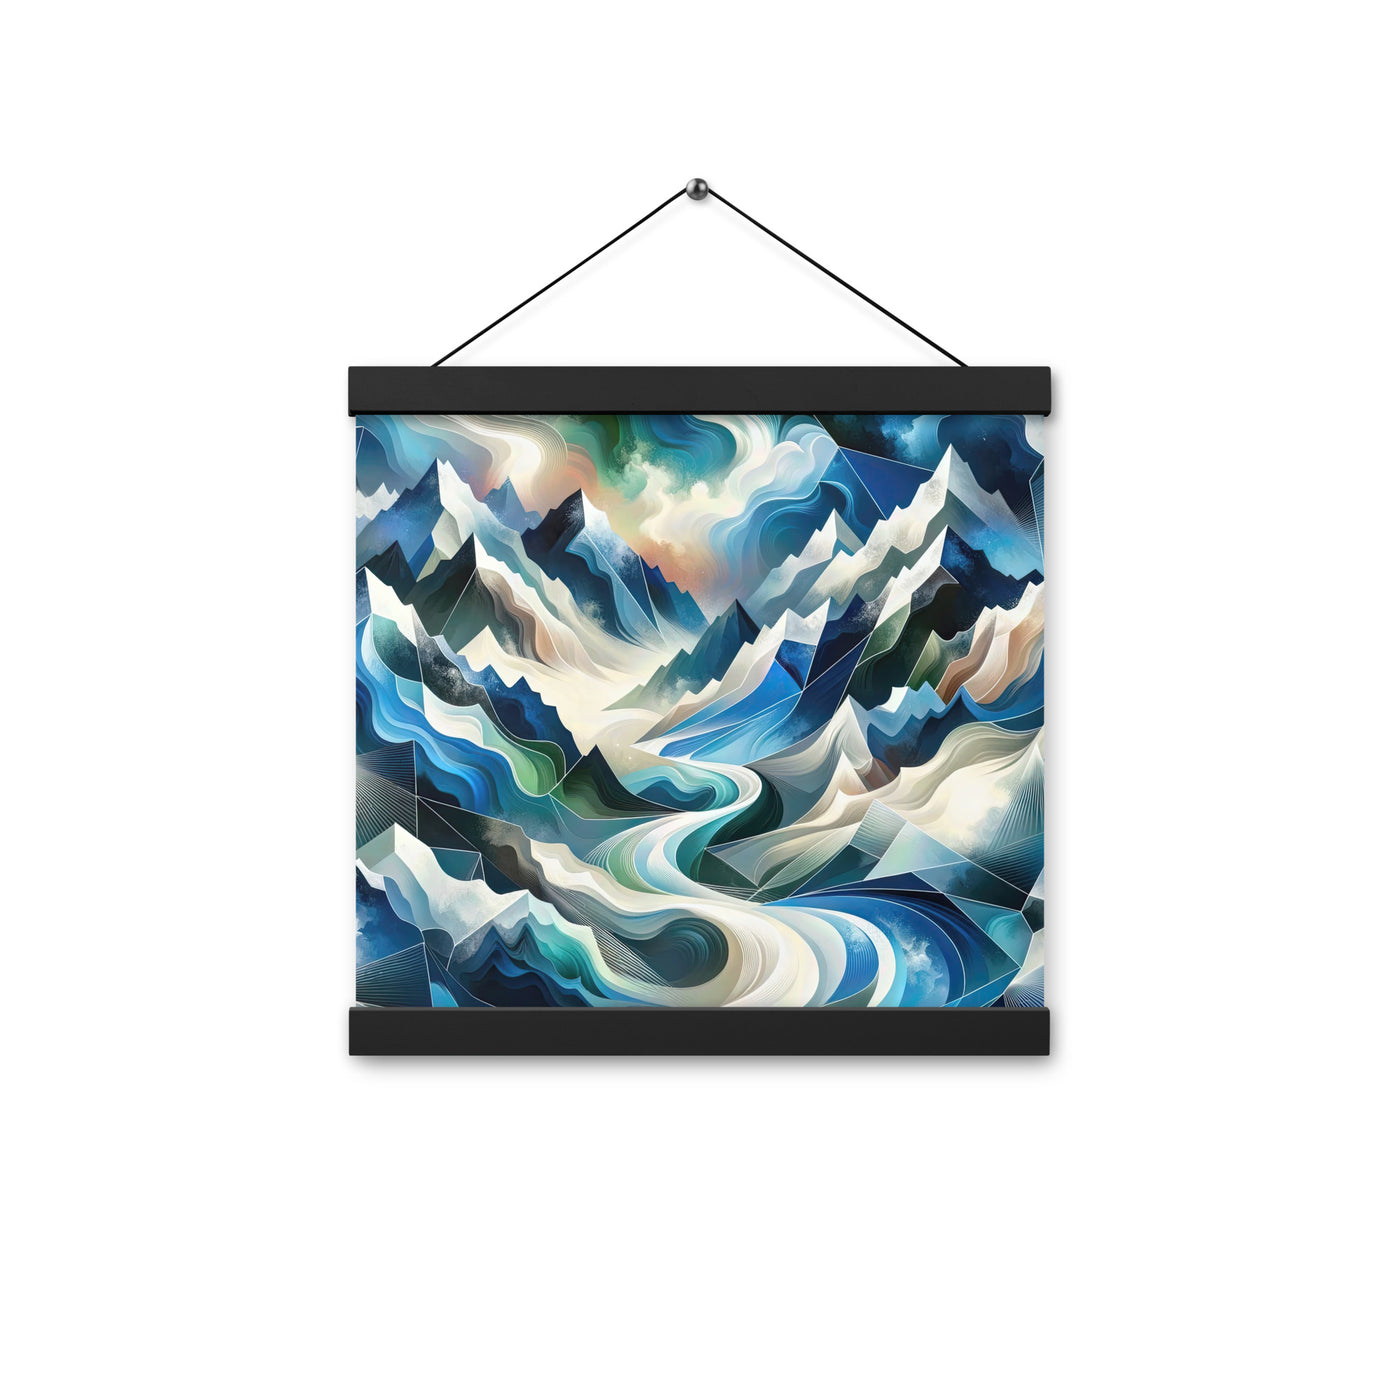 Abstrakte Kunst der Alpen, die geometrische Formen verbindet, um Berggipfel, Täler und Flüsse im Schnee darzustellen. . - Enhanced Matte berge xxx yyy zzz 30.5 x 30.5 cm